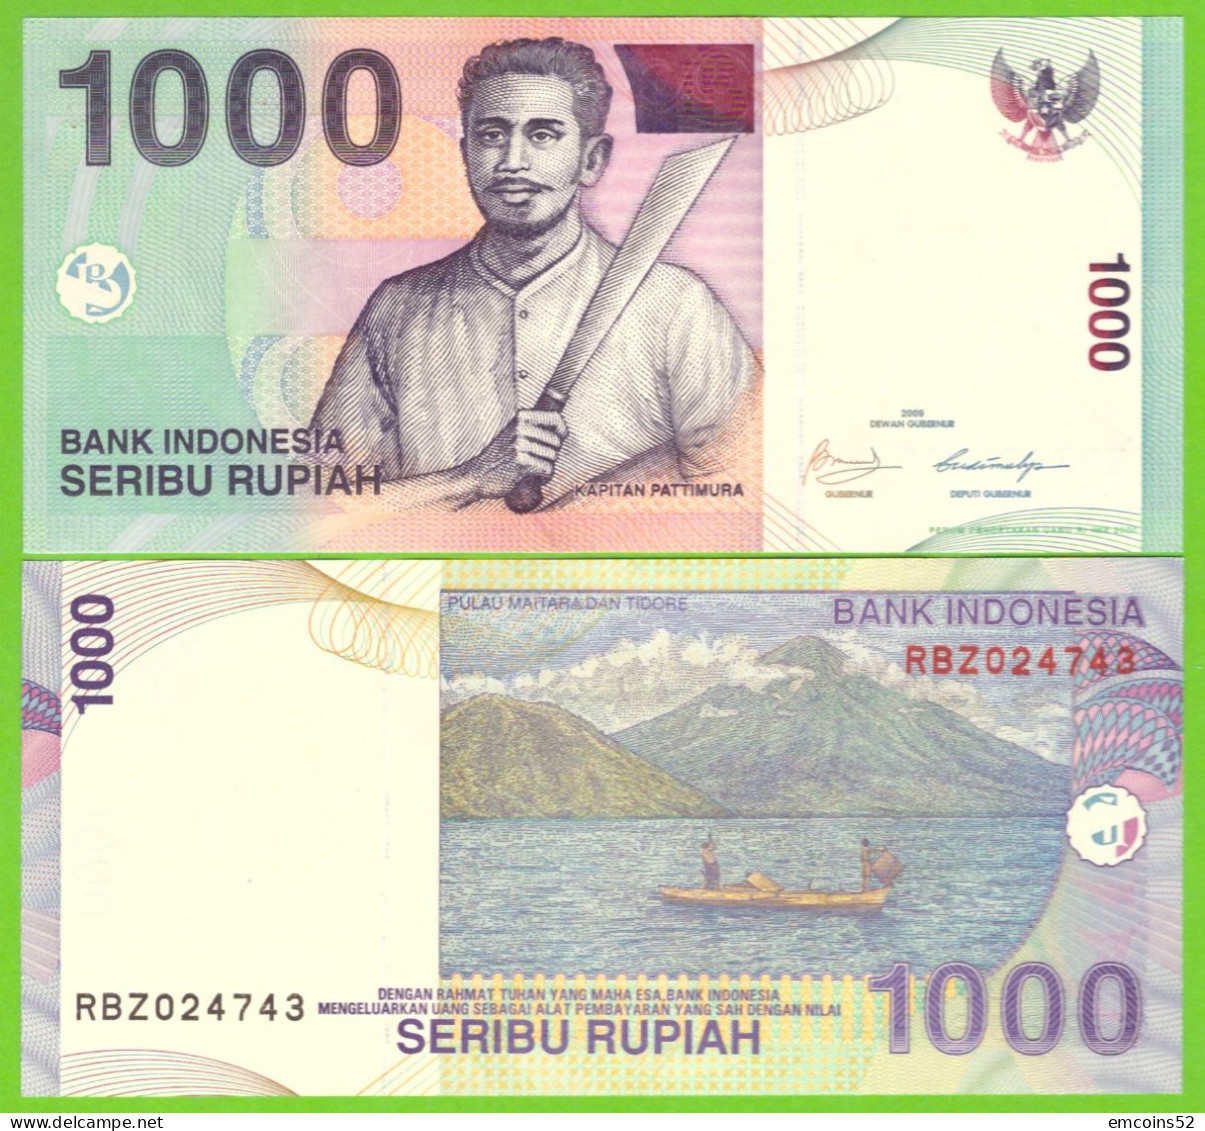 INDONESIA 1000 RUPIAH 2000/2009  P-141j UNC - Indonesien